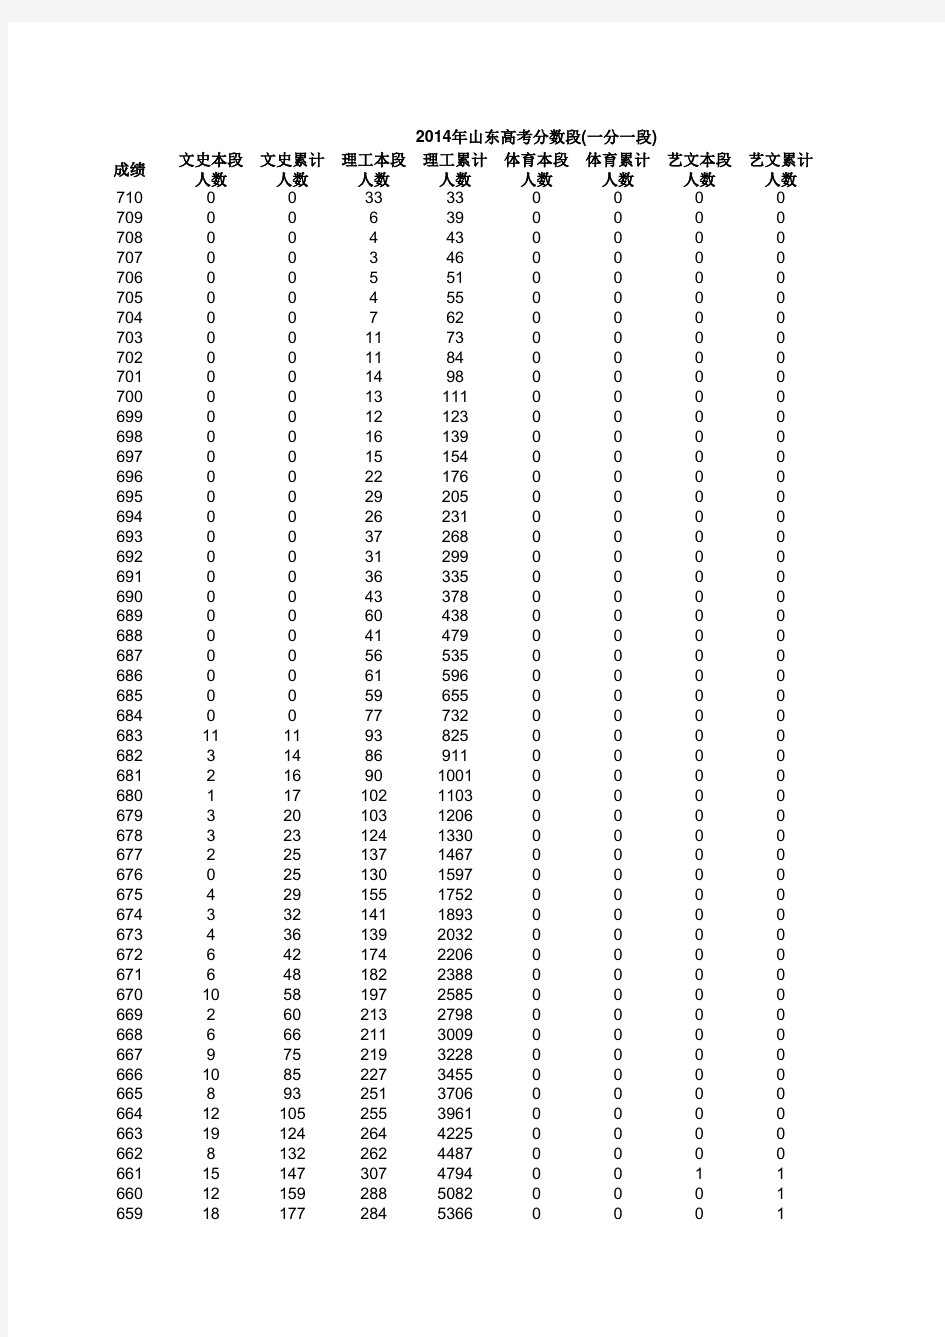 2014年山东高考分数段(一分一段)